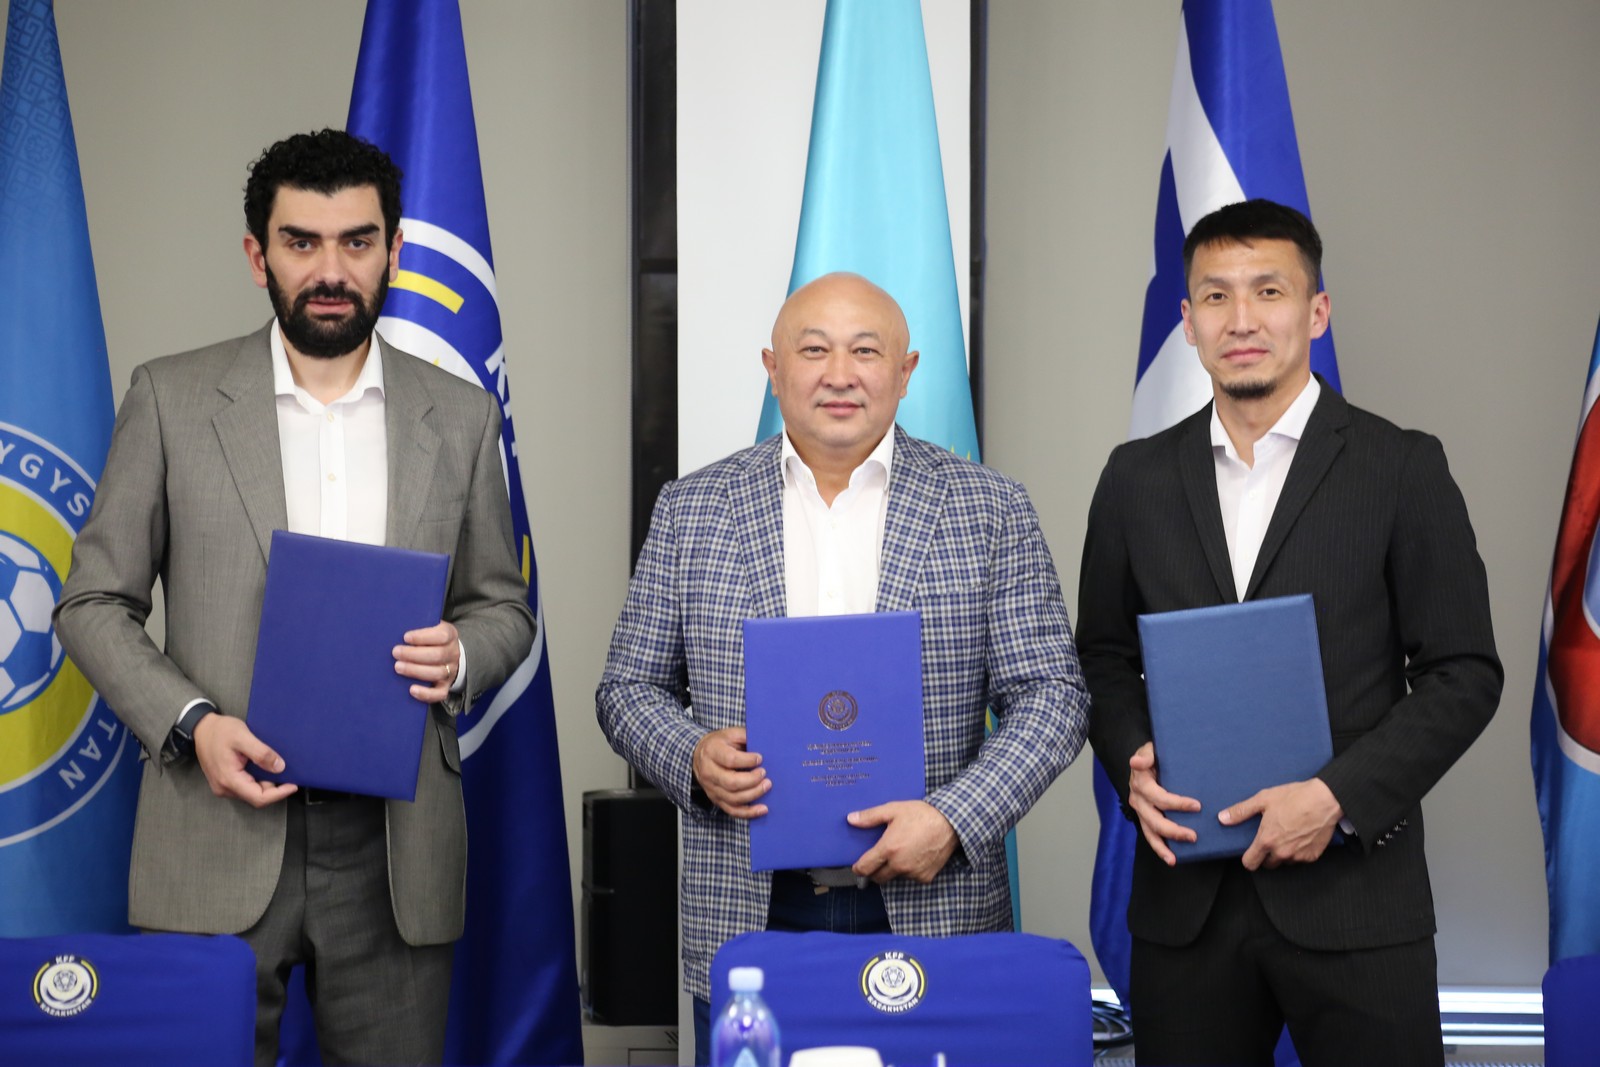 КФФ, ПФЛК и Альянс профессиональных футболистов Казахстана подписали меморандум о взаимном сотрудничестве